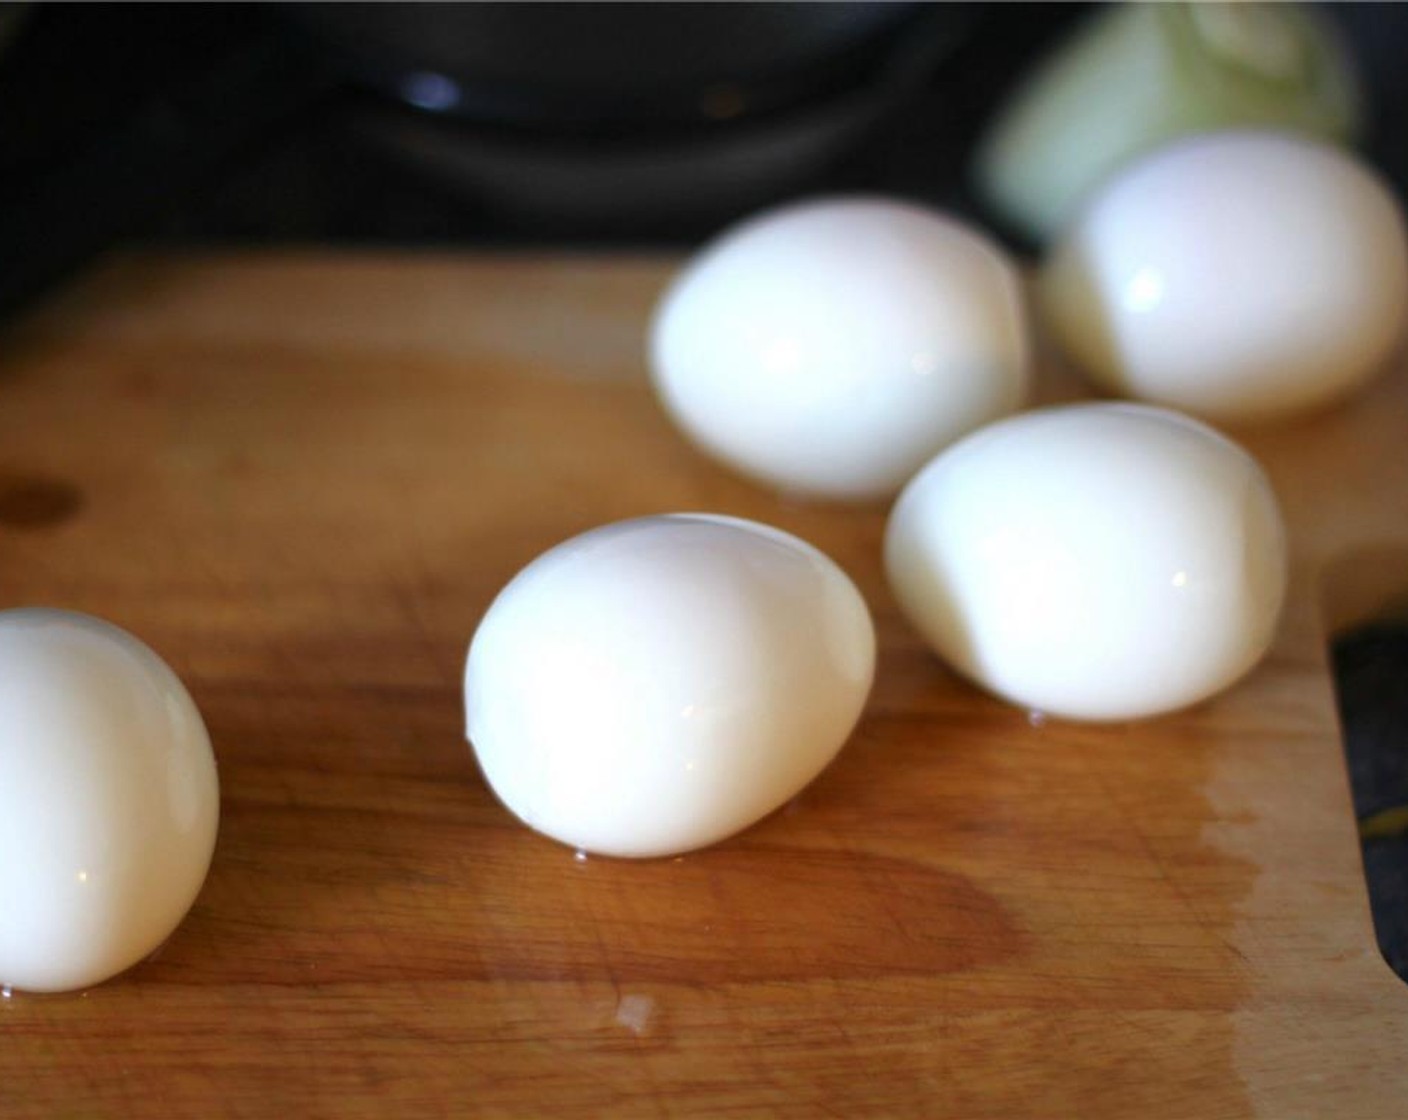 Schritt 1 Wasser in einem Topf zum Kochen bringen, Eier (4) hinzufügen und für 8 Minuten kochen, bis sie hart gekocht sind. Die Eier anschliessend unter kaltem Wasser abspülen und zum vollständigen Abkühlen in den Kühlschrank stellen.